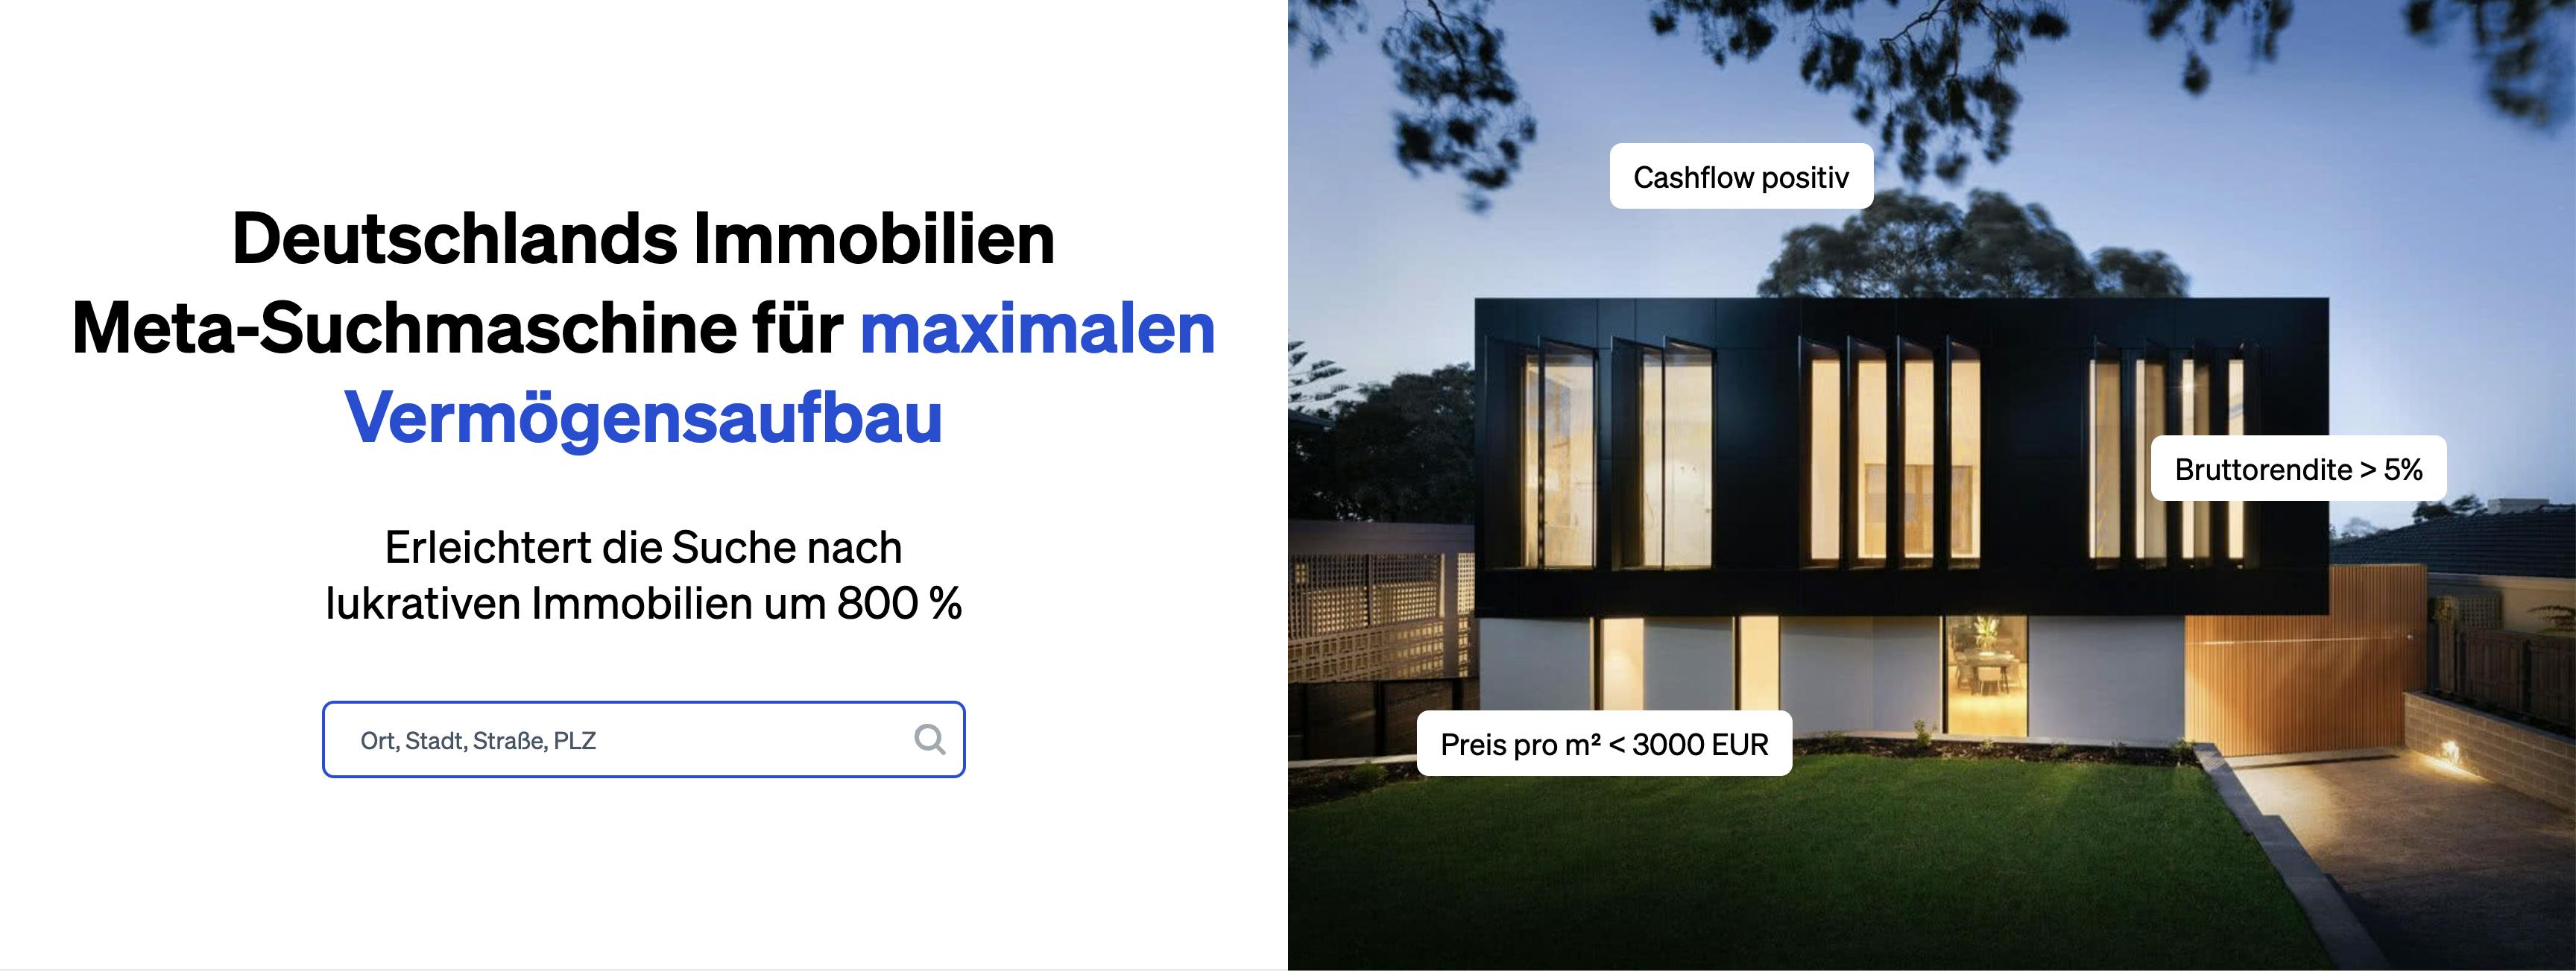 Kallang ist Deutschlands Immobilien Meta-Suchmaschine für maximalen Vermögensaufbau und wird gerade von professionellen und ambitionierten Anlegern geschätzt.